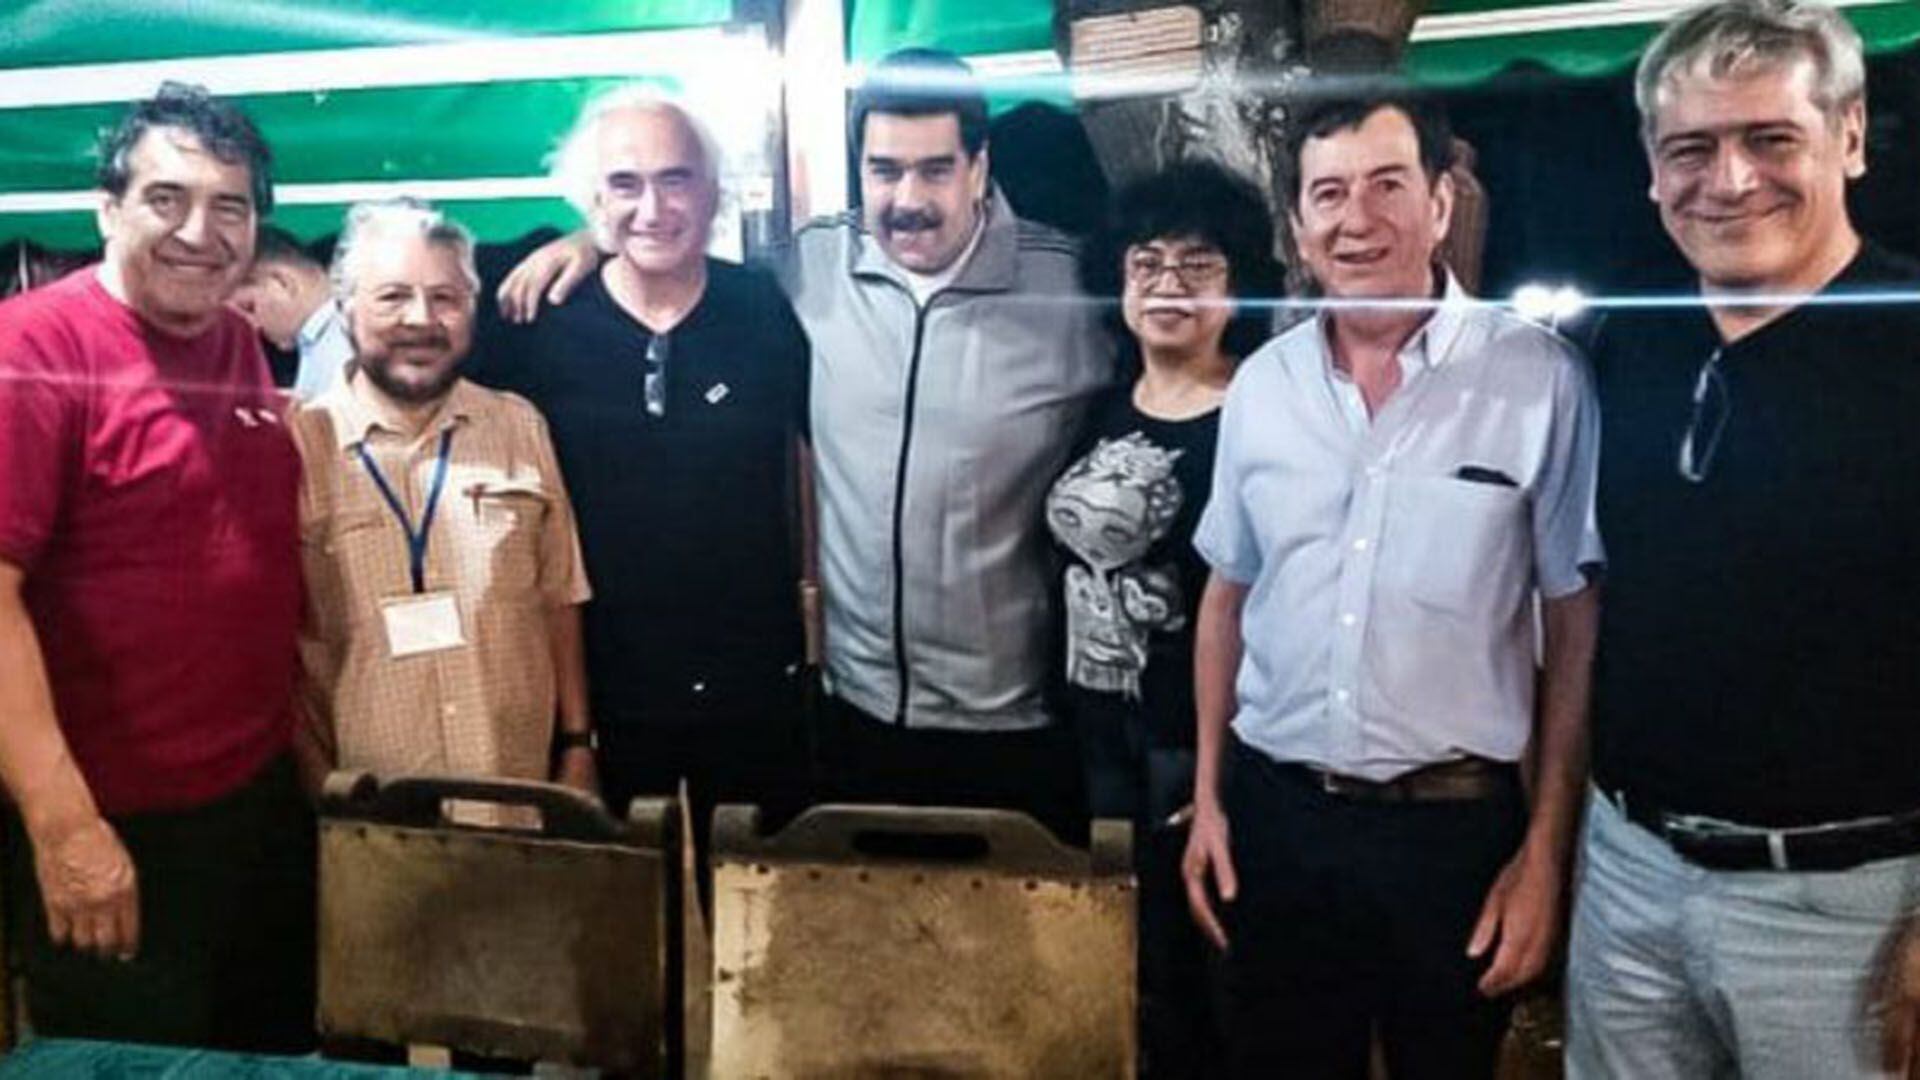 Nicolás Maduro y la delegación de sindicalistas argentinos. De izquierda a derecha, Hugo "Cachorro" Godoy, Oscar de Isasi, Ricardo Peidró, Adolfo "Fito" Aguirre y Julio Fuentes